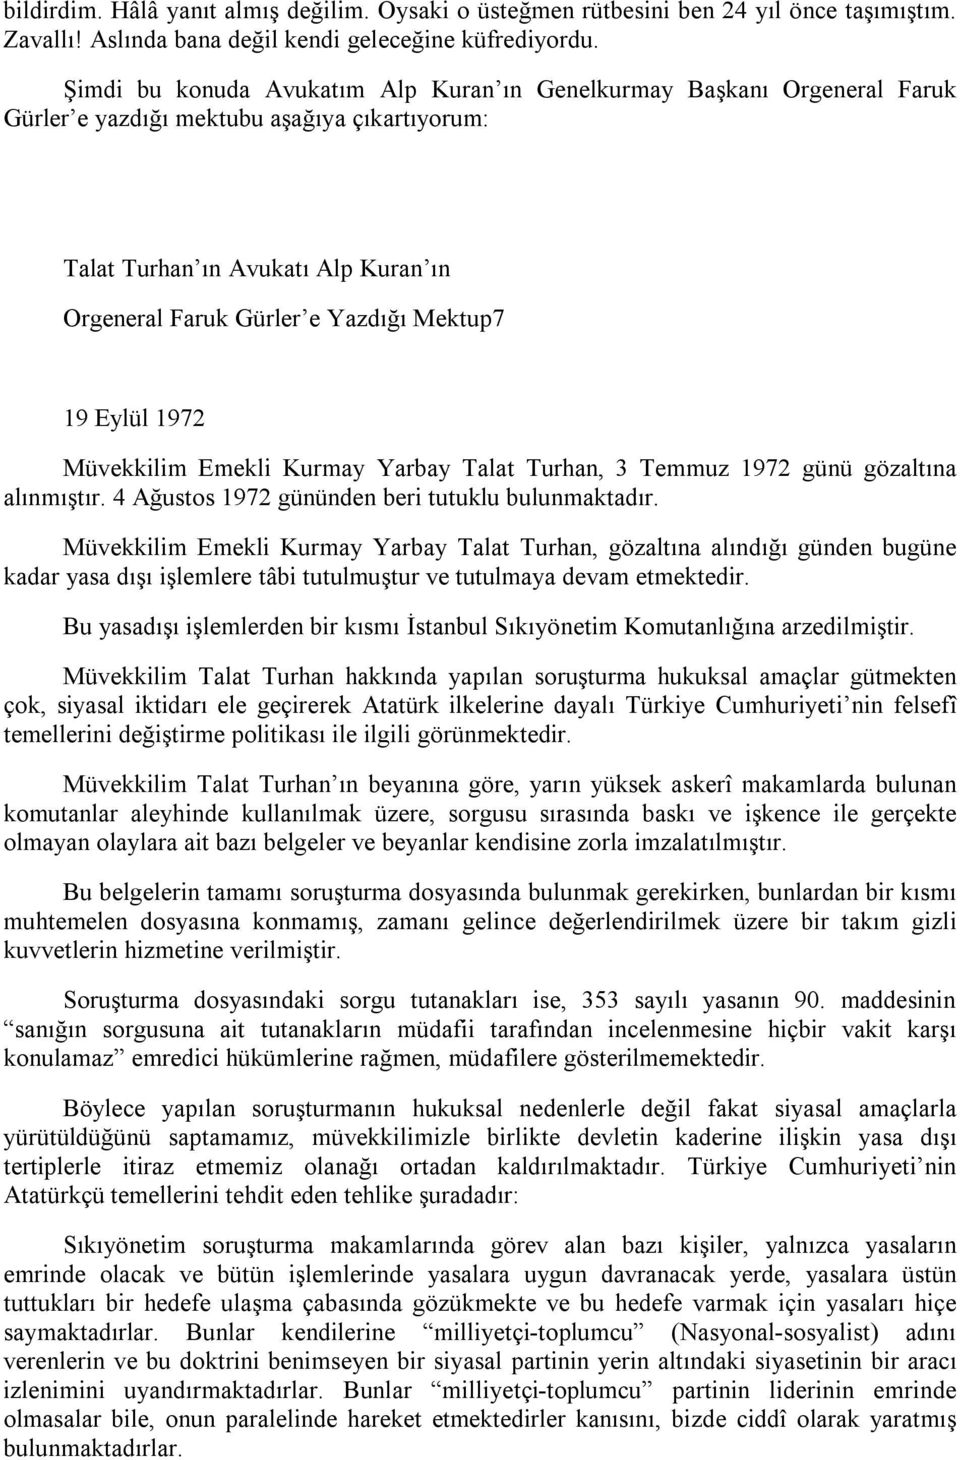 19 Eylül 1972 Müvekkilim Emekli Kurmay Yarbay Talat Turhan, 3 Temmuz 1972 günü gözaltına alınmıştır. 4 Ağustos 1972 gününden beri tutuklu bulunmaktadır.